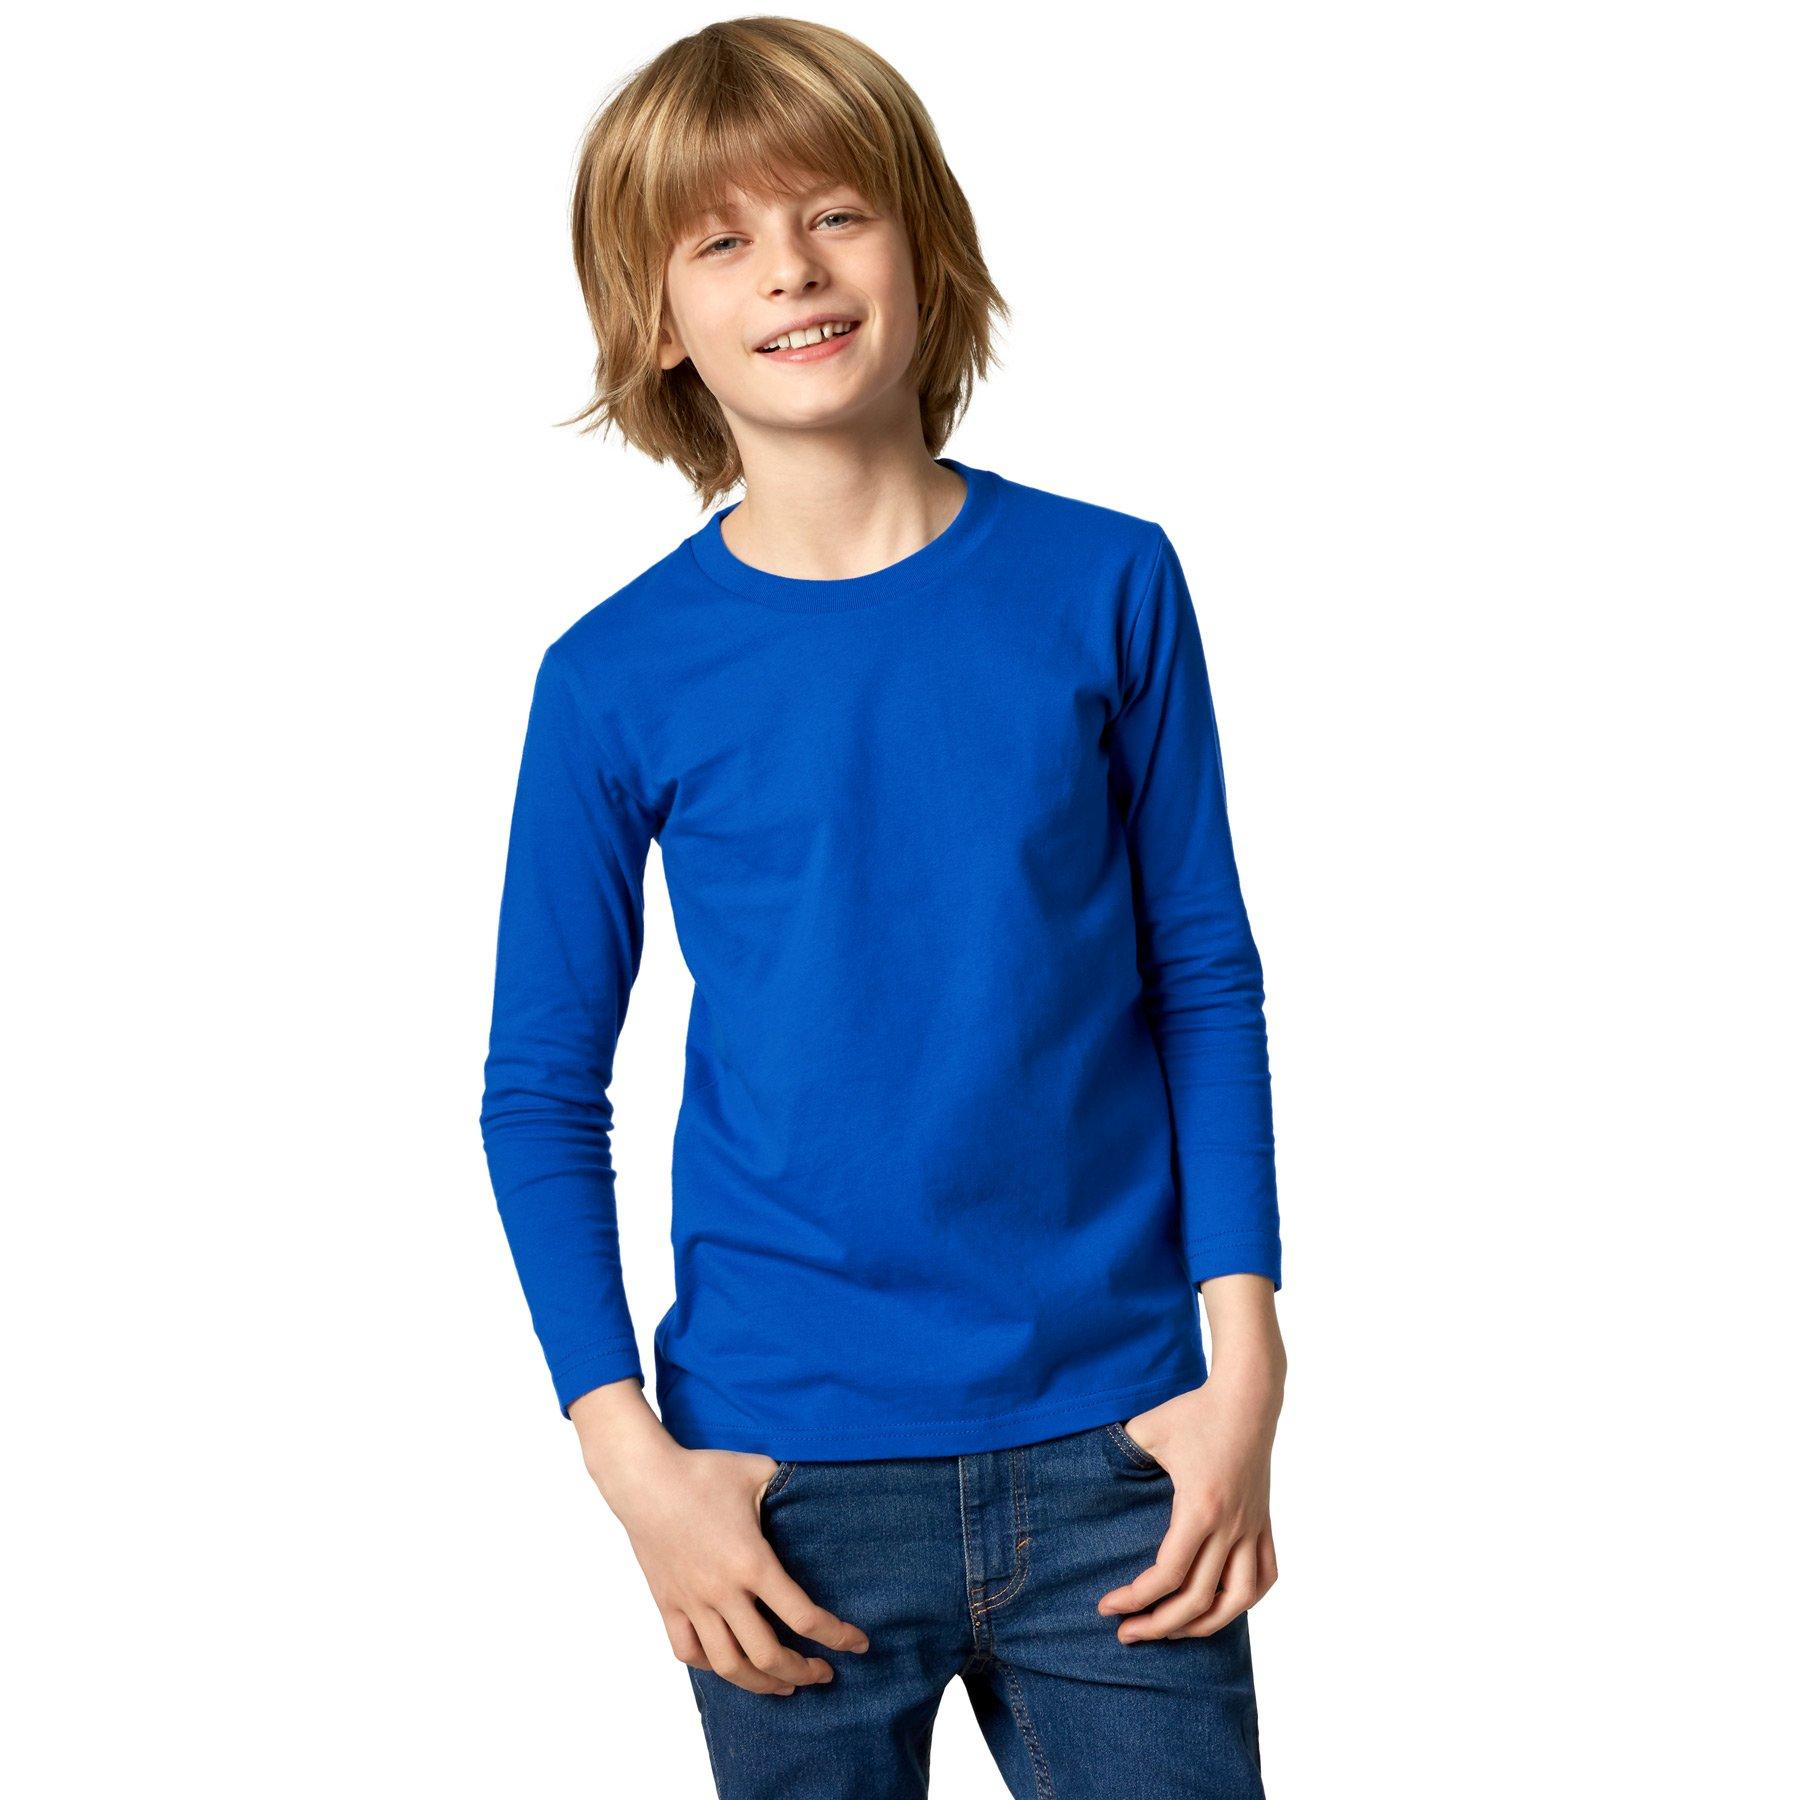 Langarm-shirt Kinder Jungen Blau 104 von Tectake